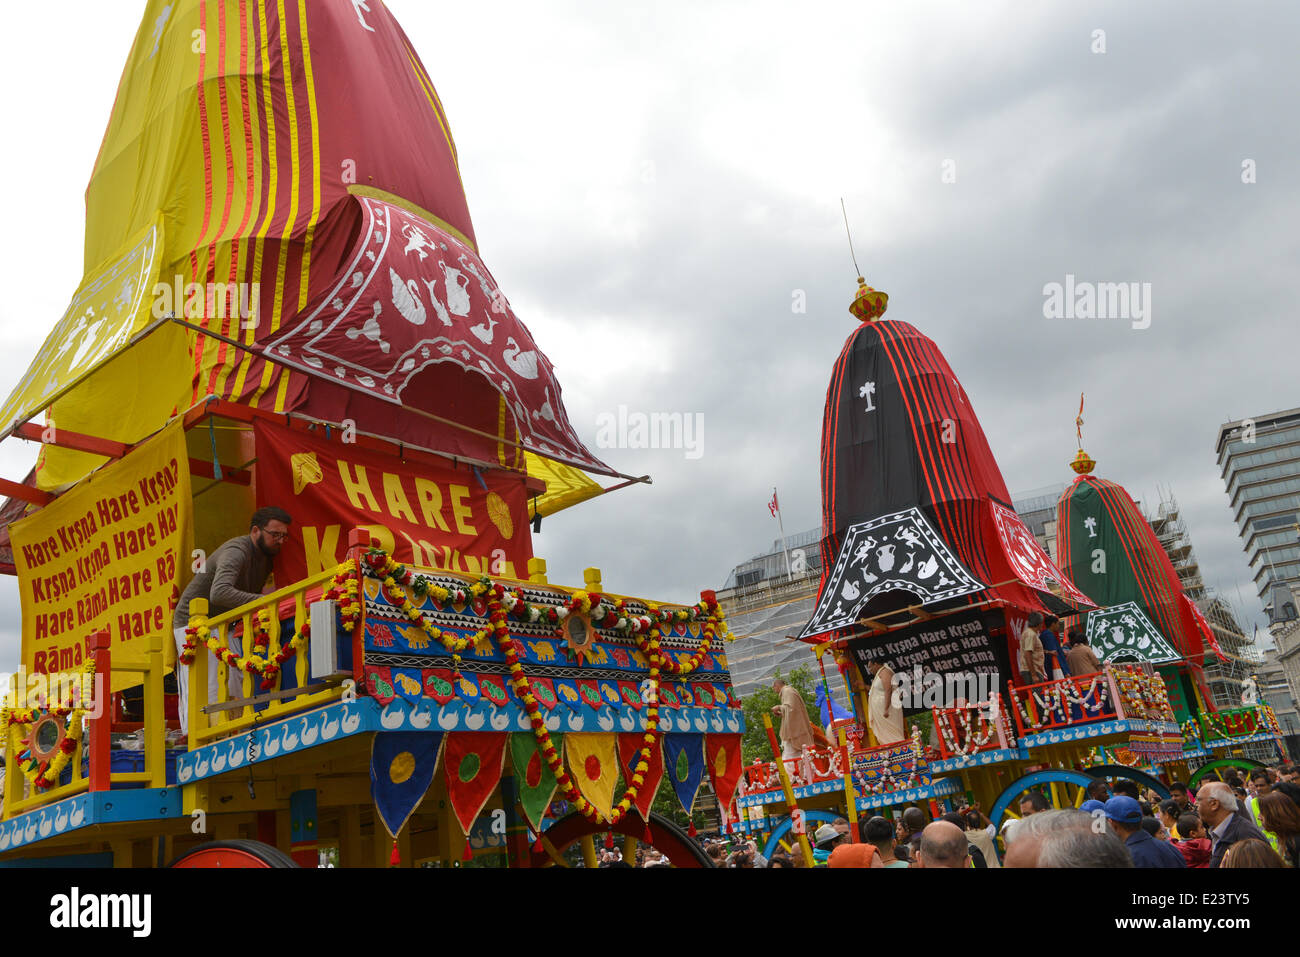 Trafalgar Square, Londres, Royaume-Uni. 15 juin 2014. Les chariots à Trafalgar Square au cours de l'Rathayatra Hare Krishna festival. Crédit : Matthieu Chattle/Alamy Live News Banque D'Images